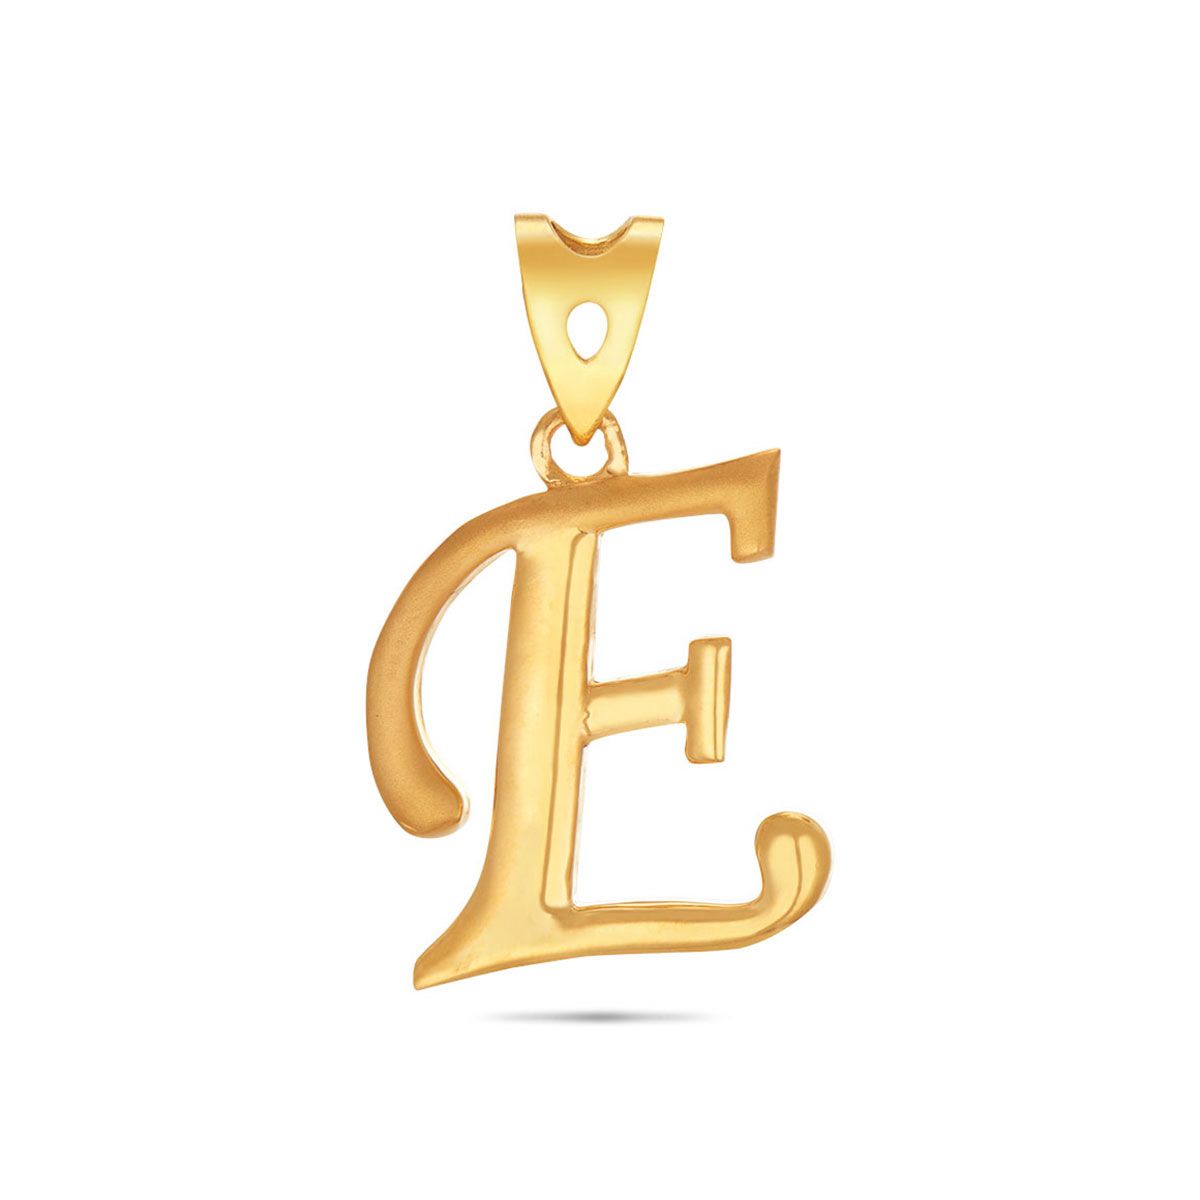 Stylish E Letter Gold Pendant